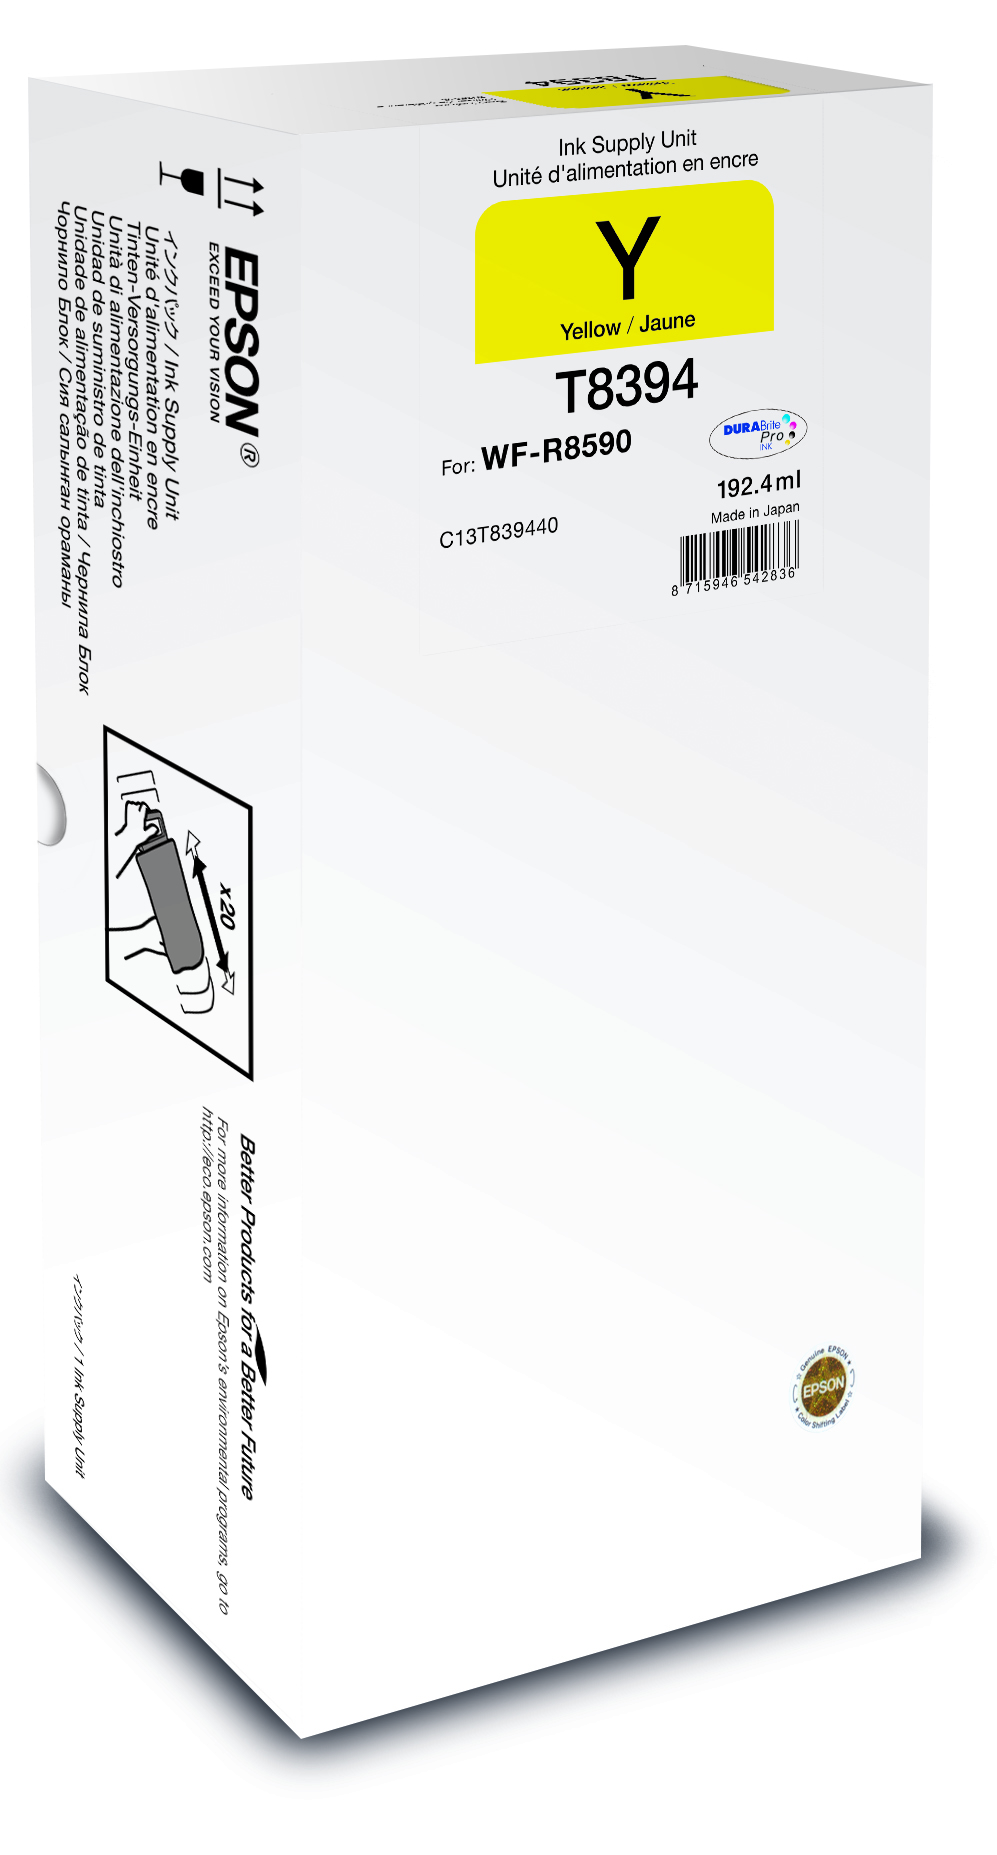 WF-R8590 Yellow XL Ink Supply Unit